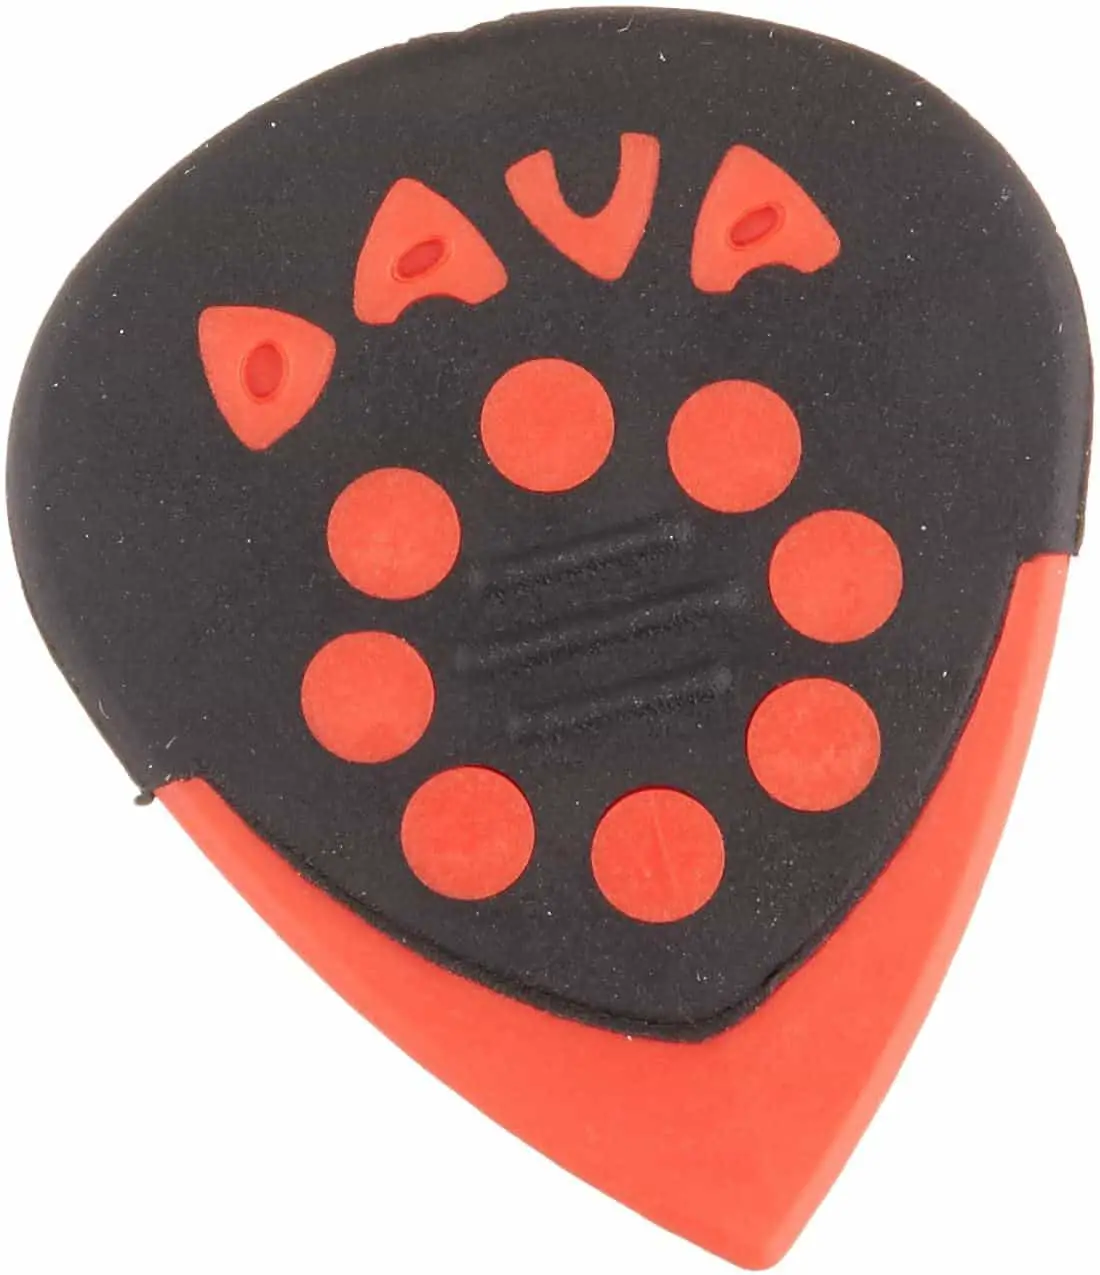 Best overall picks for hybrid picking: Dava Jazz Grips